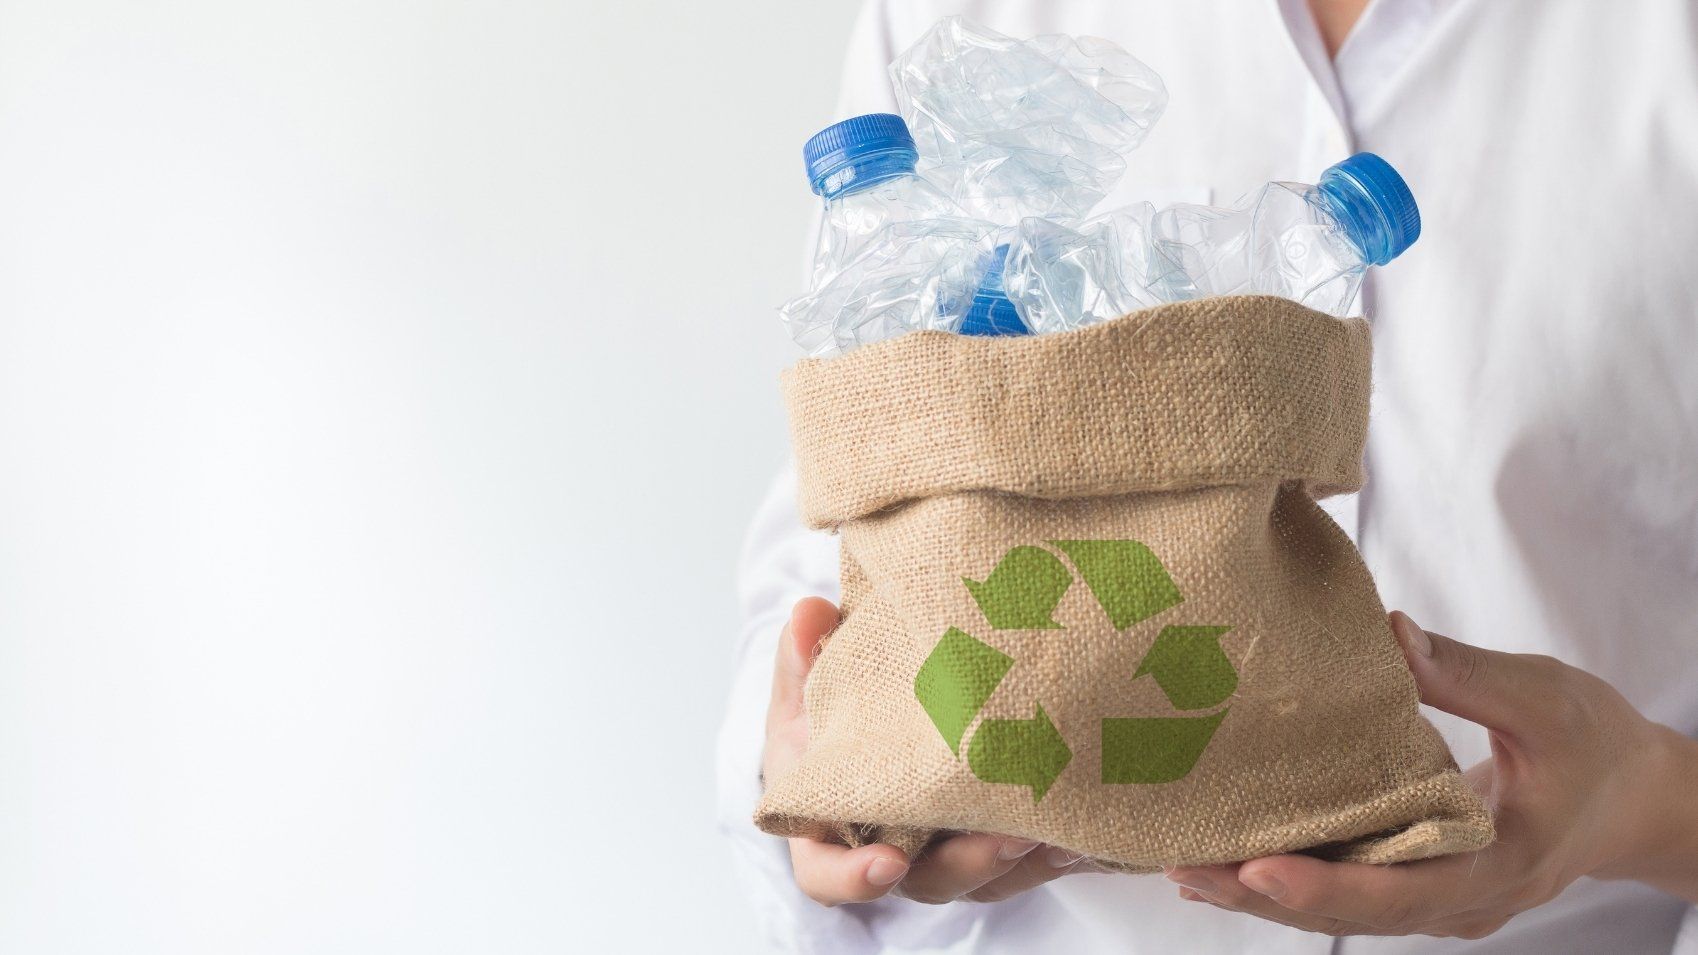 Ecologistic SpA è in grado di trasformare rifiuti plastici selezionati nei propri impianti, in nuovi prodotti dando SECONDA VITA ALLA PLASTICA in piena coerenza con gli obiettivi comunitari di riduzione della produzione di plastica vergine.